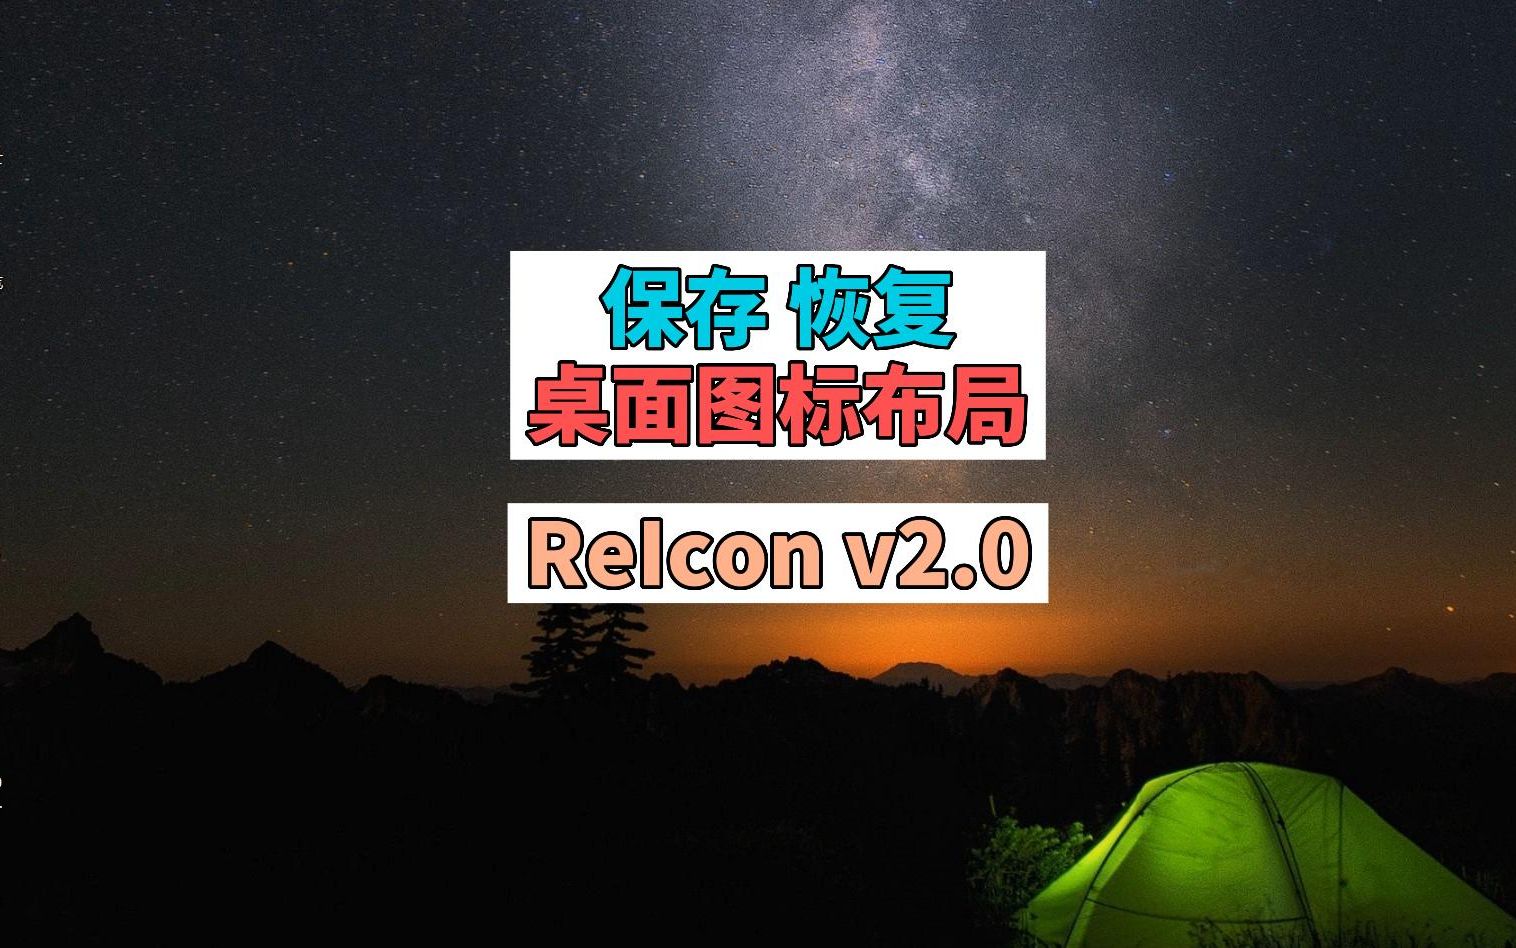 保存和恢复你的桌面图标布局 ReIcon v2.0